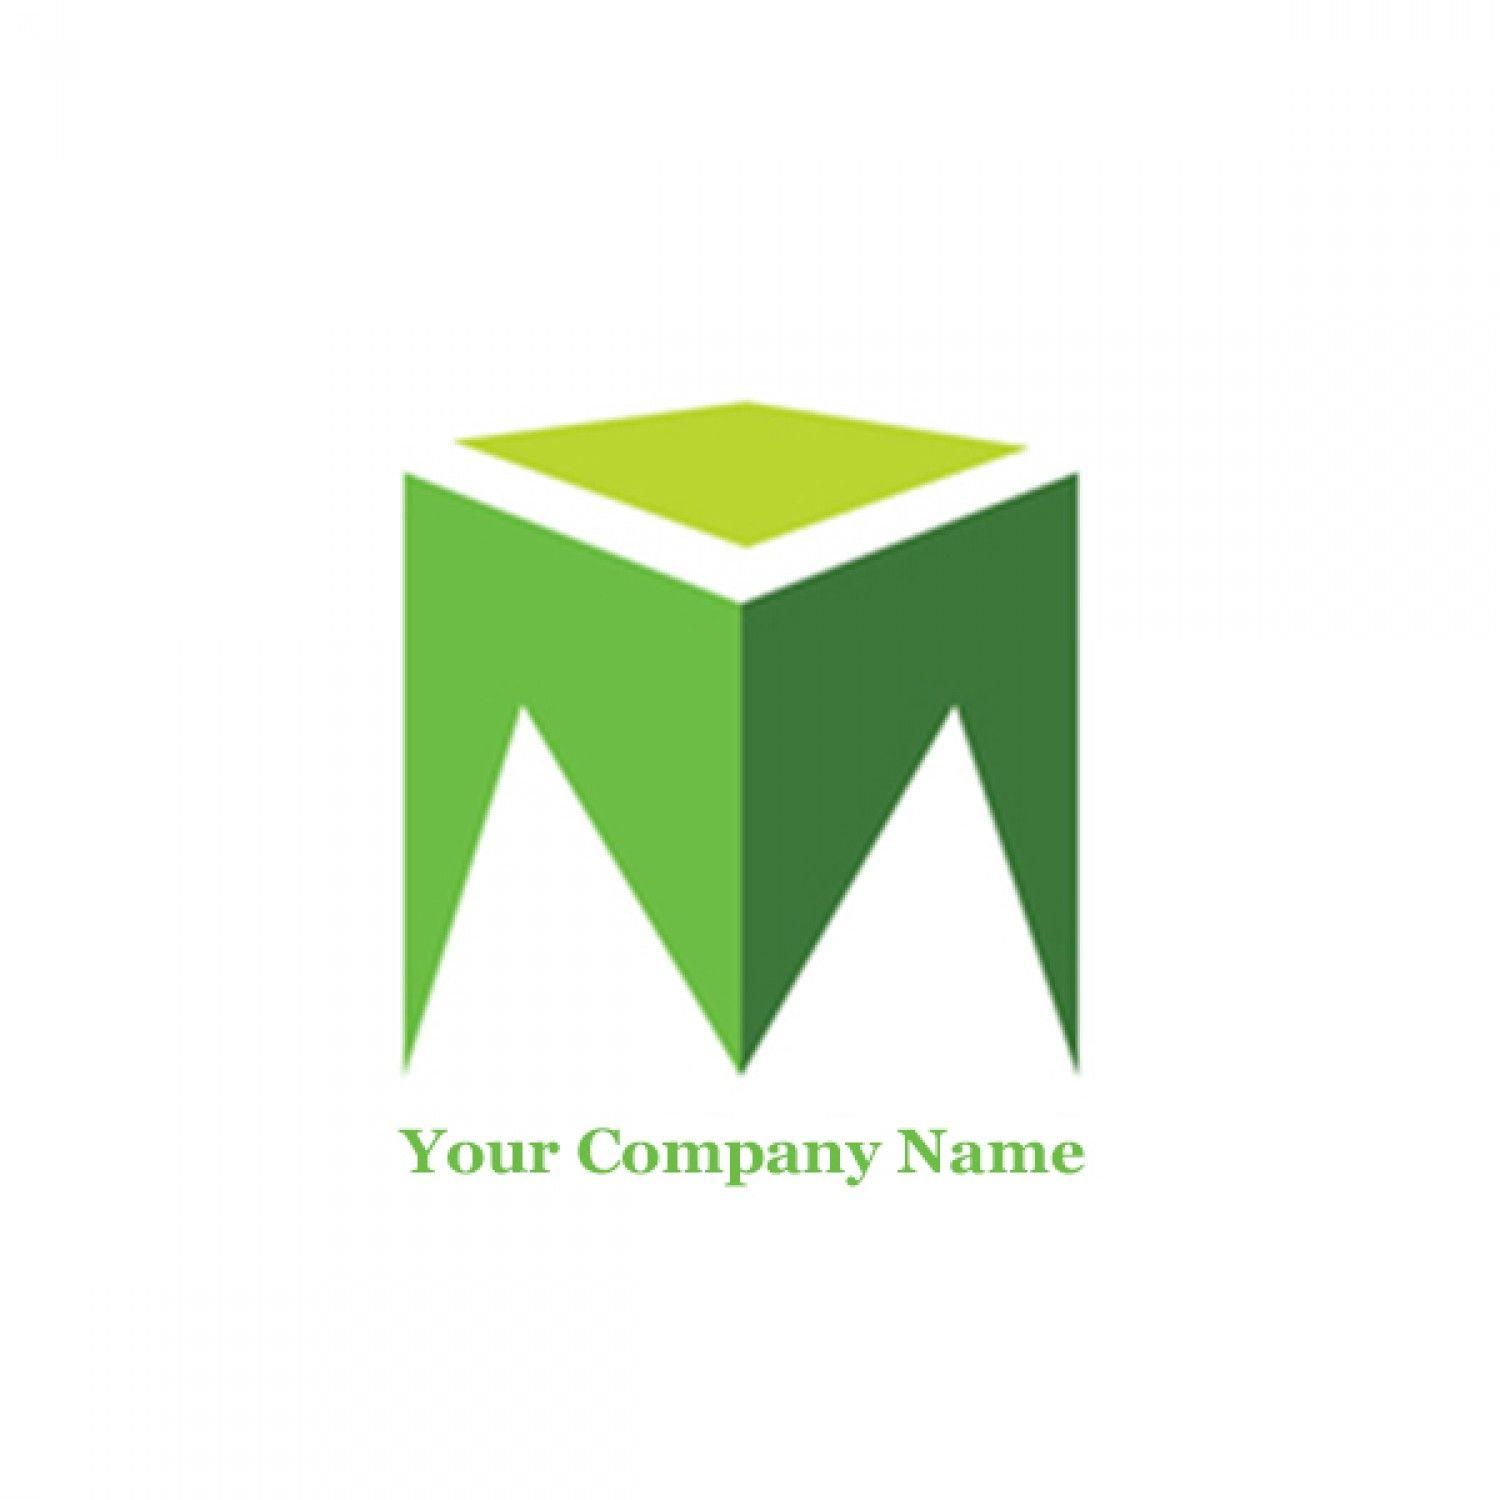 Green Rectangle Company Logo - Company Brand Logo Design Service | Visual.ly